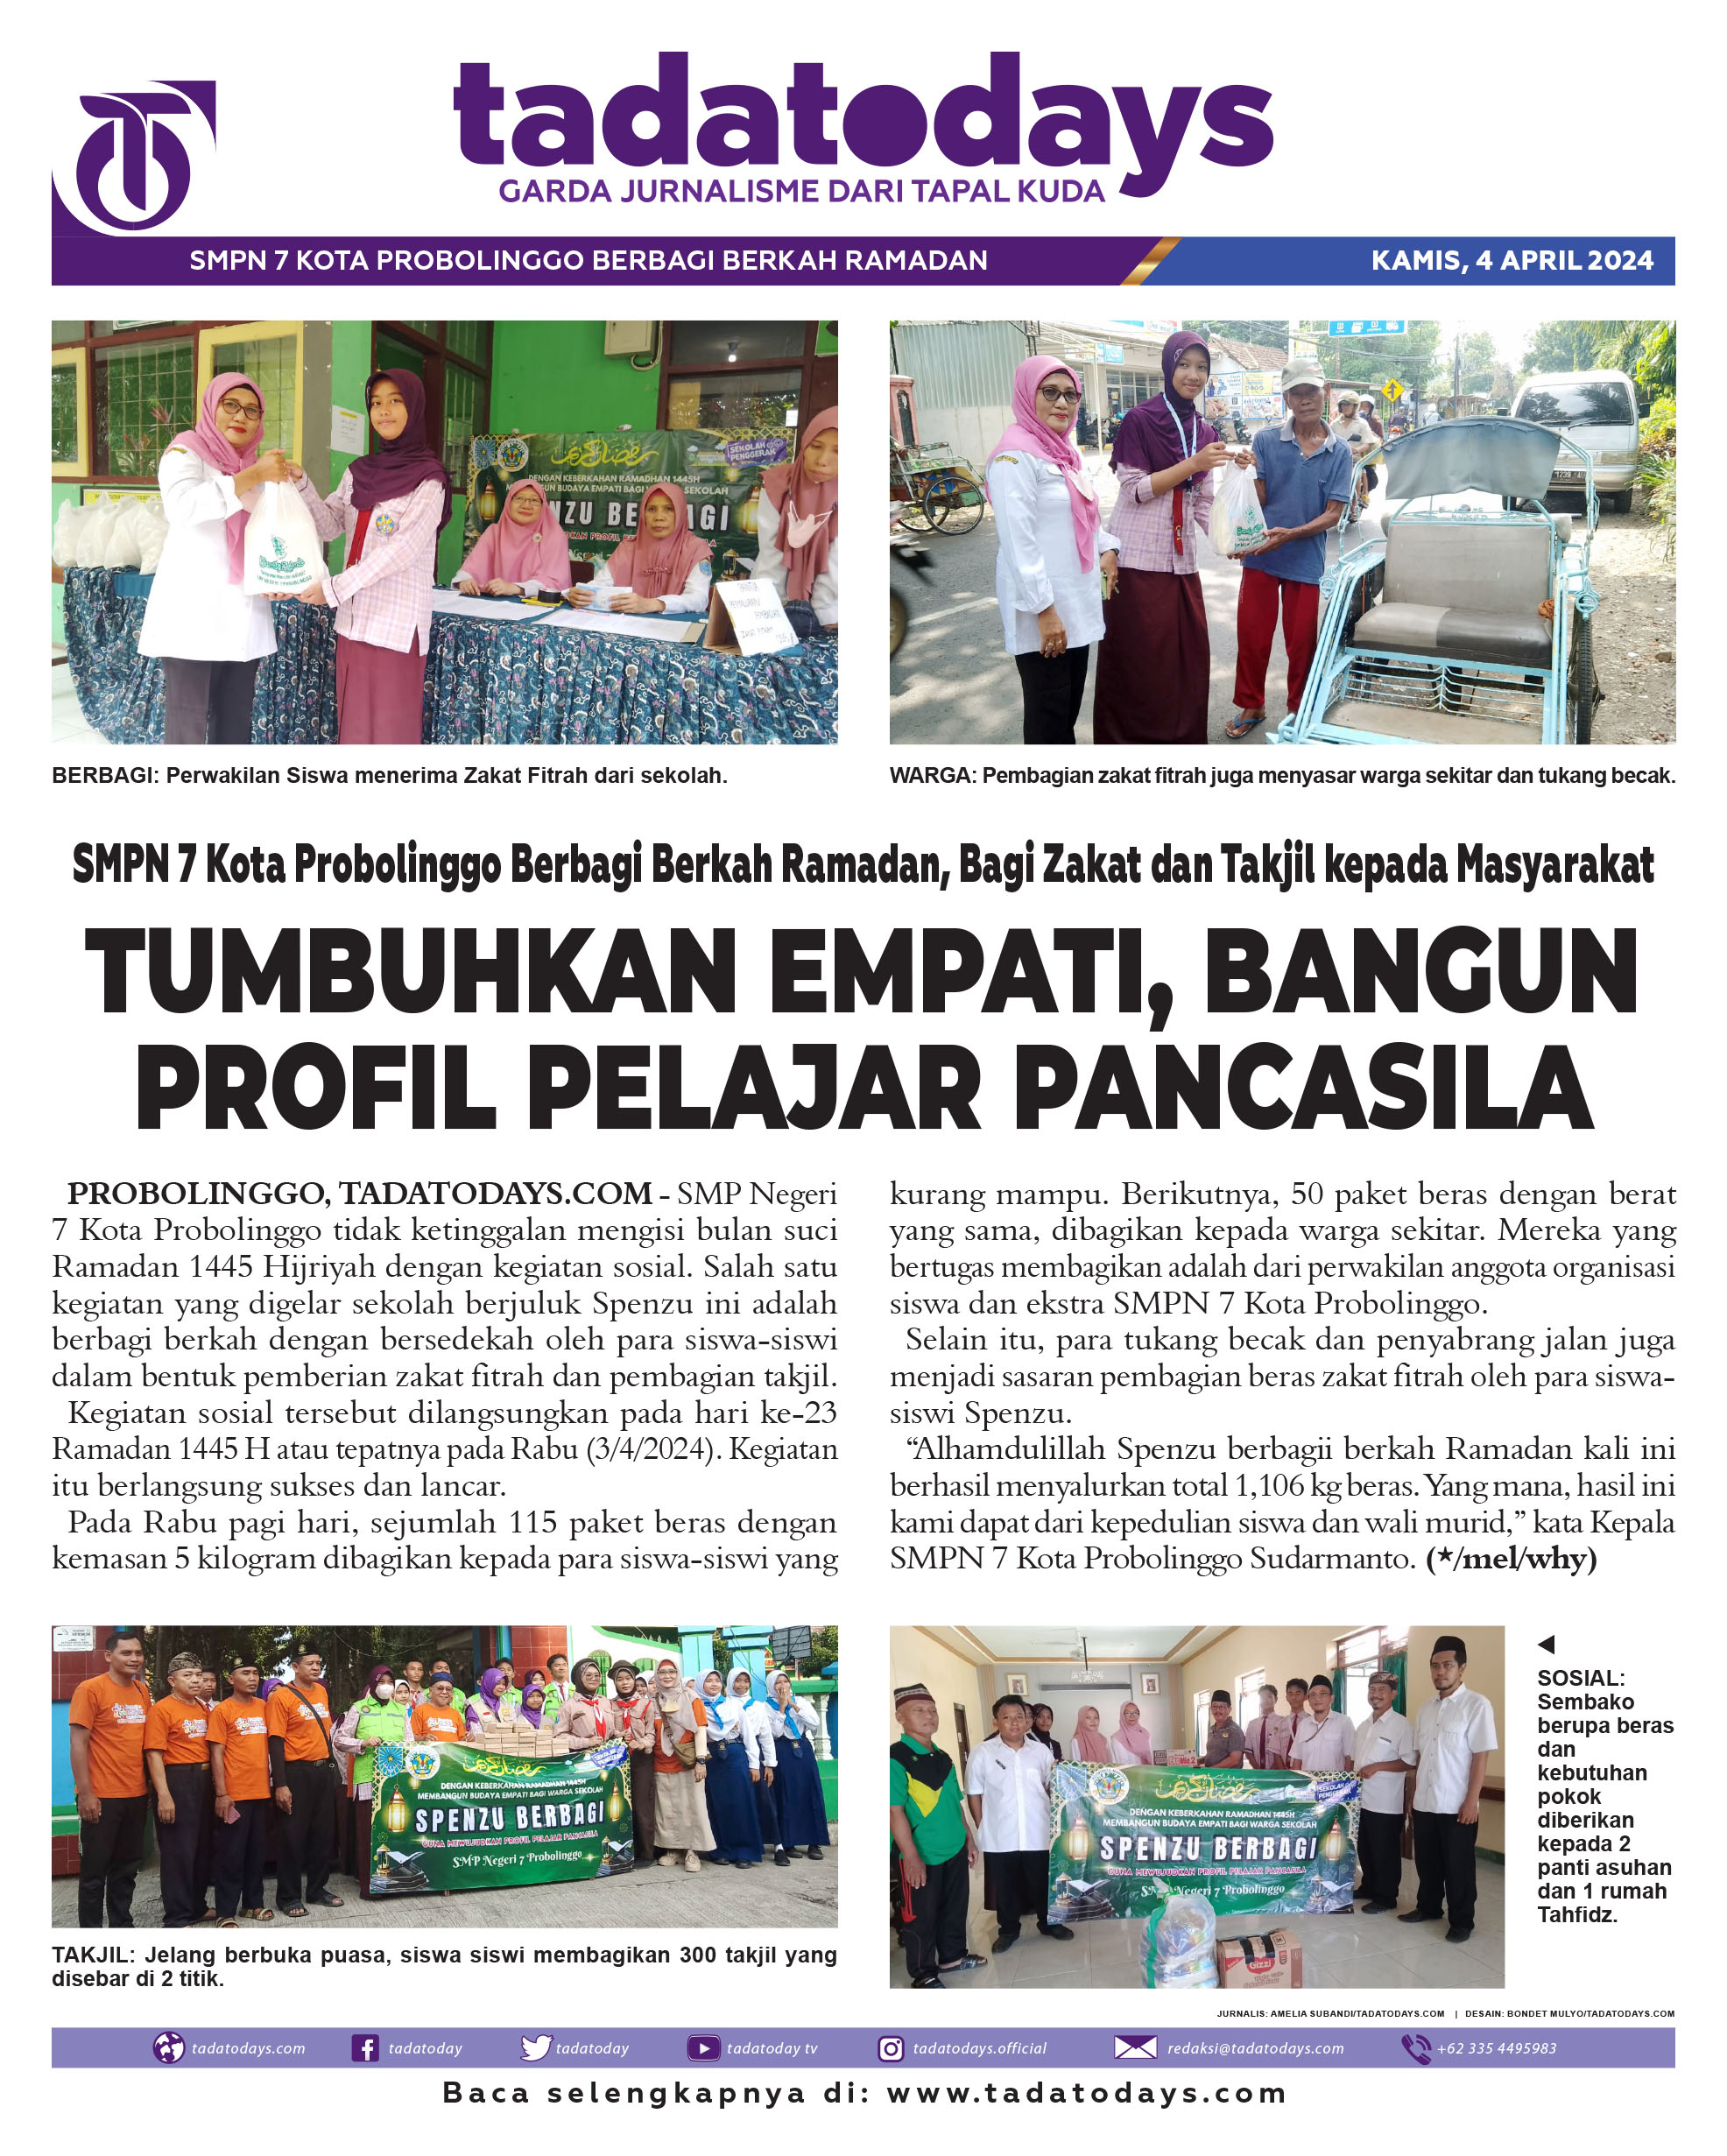 SMPN 7 Kota Probolinggo Berbagi Berkah Ramadan, Bagi Zakat & Takjil kepada Masyarakat